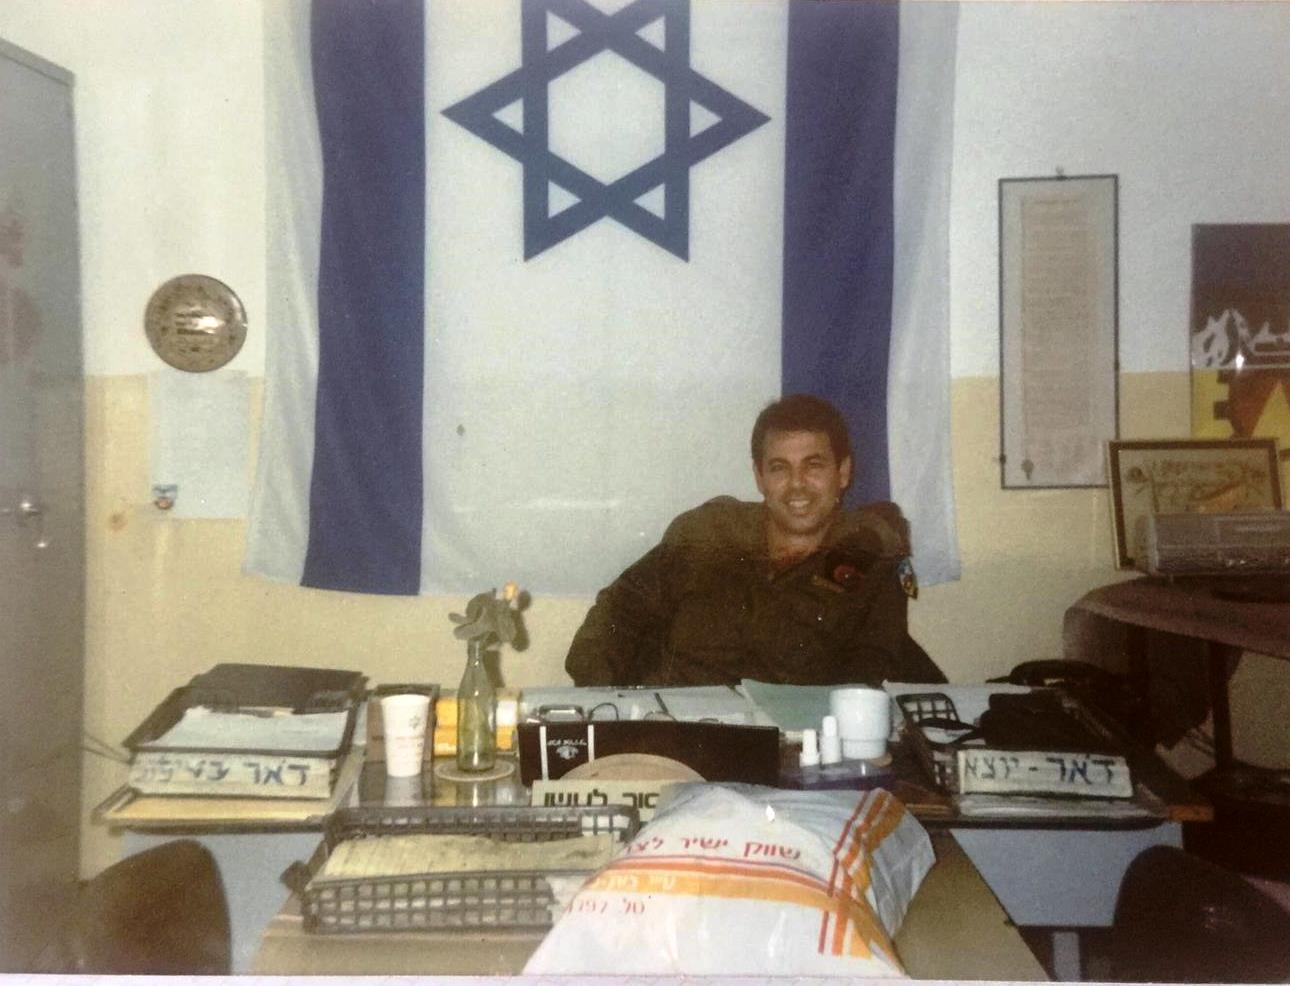 תמונה של שנת 1993 - סיפורה של סדנת אלעל בשנים 1986 - 1993 מפי מפקד הסדנא רנ"ג עמוס סרור